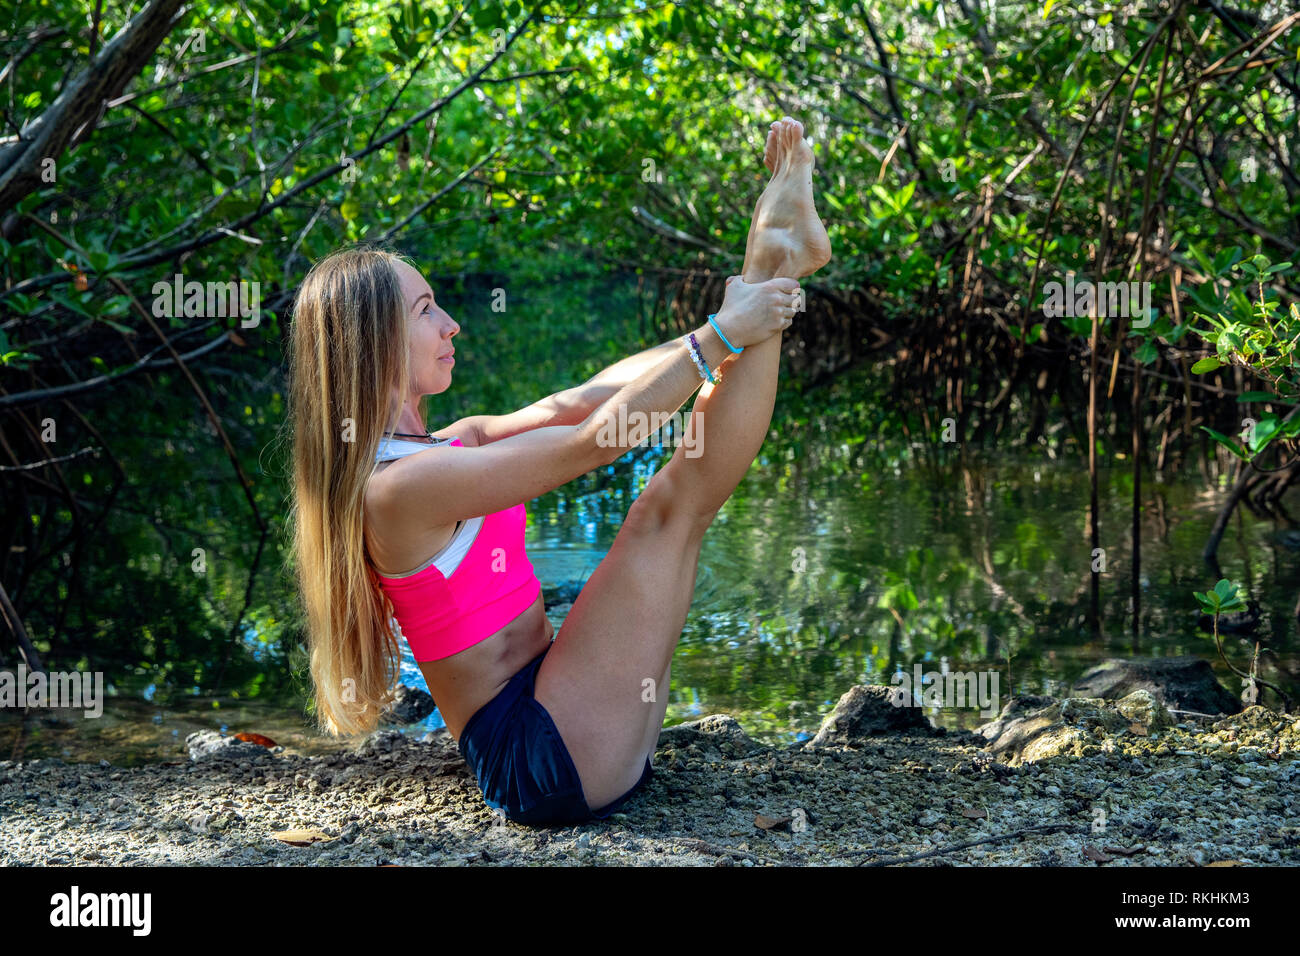 Junge Frau mit Yoga (modifizierte Boot Pose-Navasana) in einer natürlichen Umgebung - Fort Lauderdale, Florida, USA Stockfoto